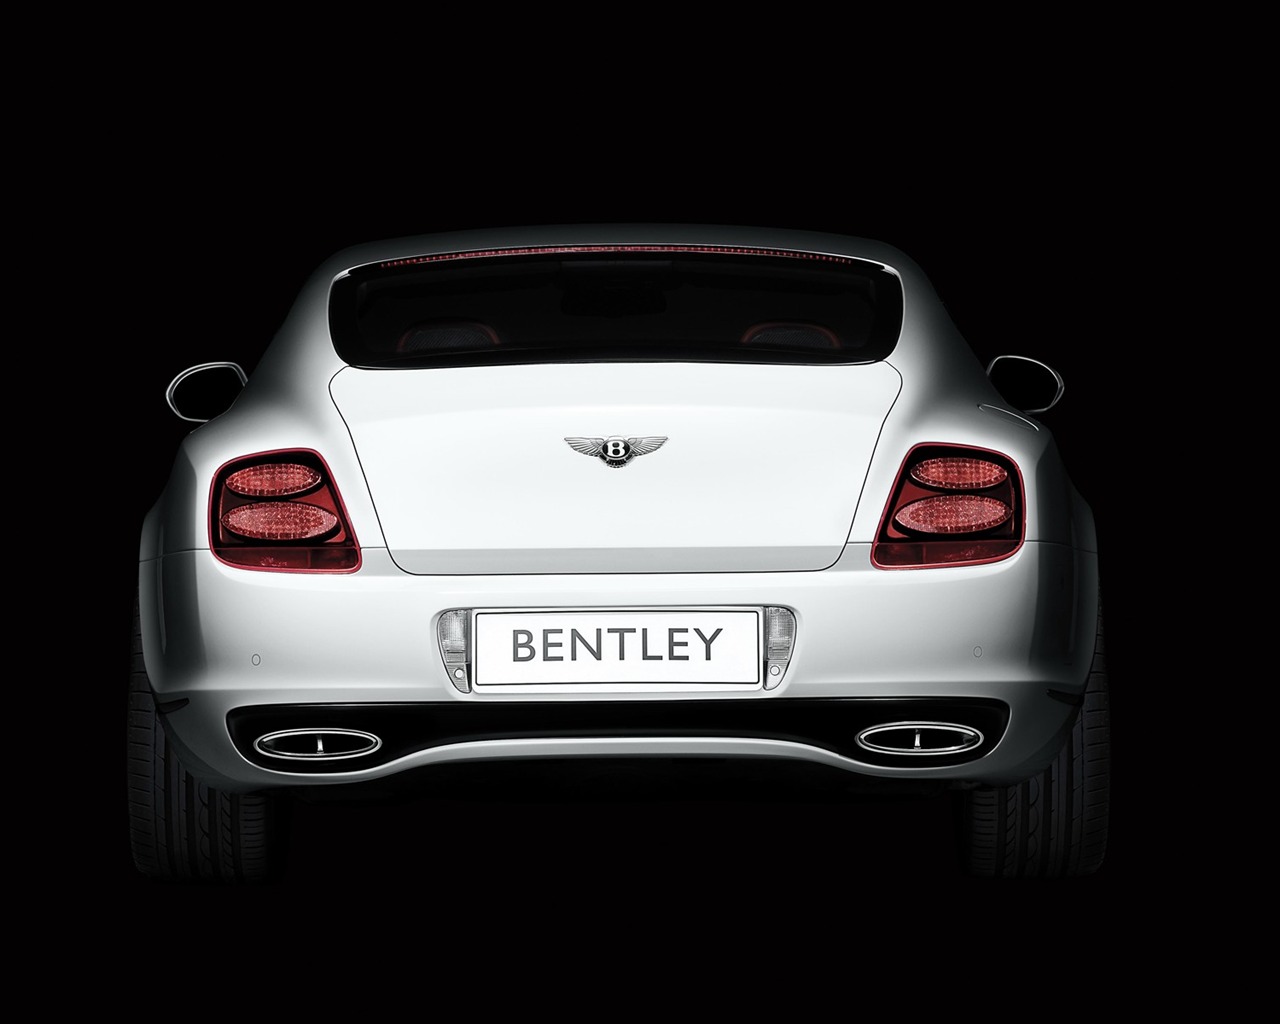 Bentley 宾利 壁纸专辑(一)4 - 1280x1024